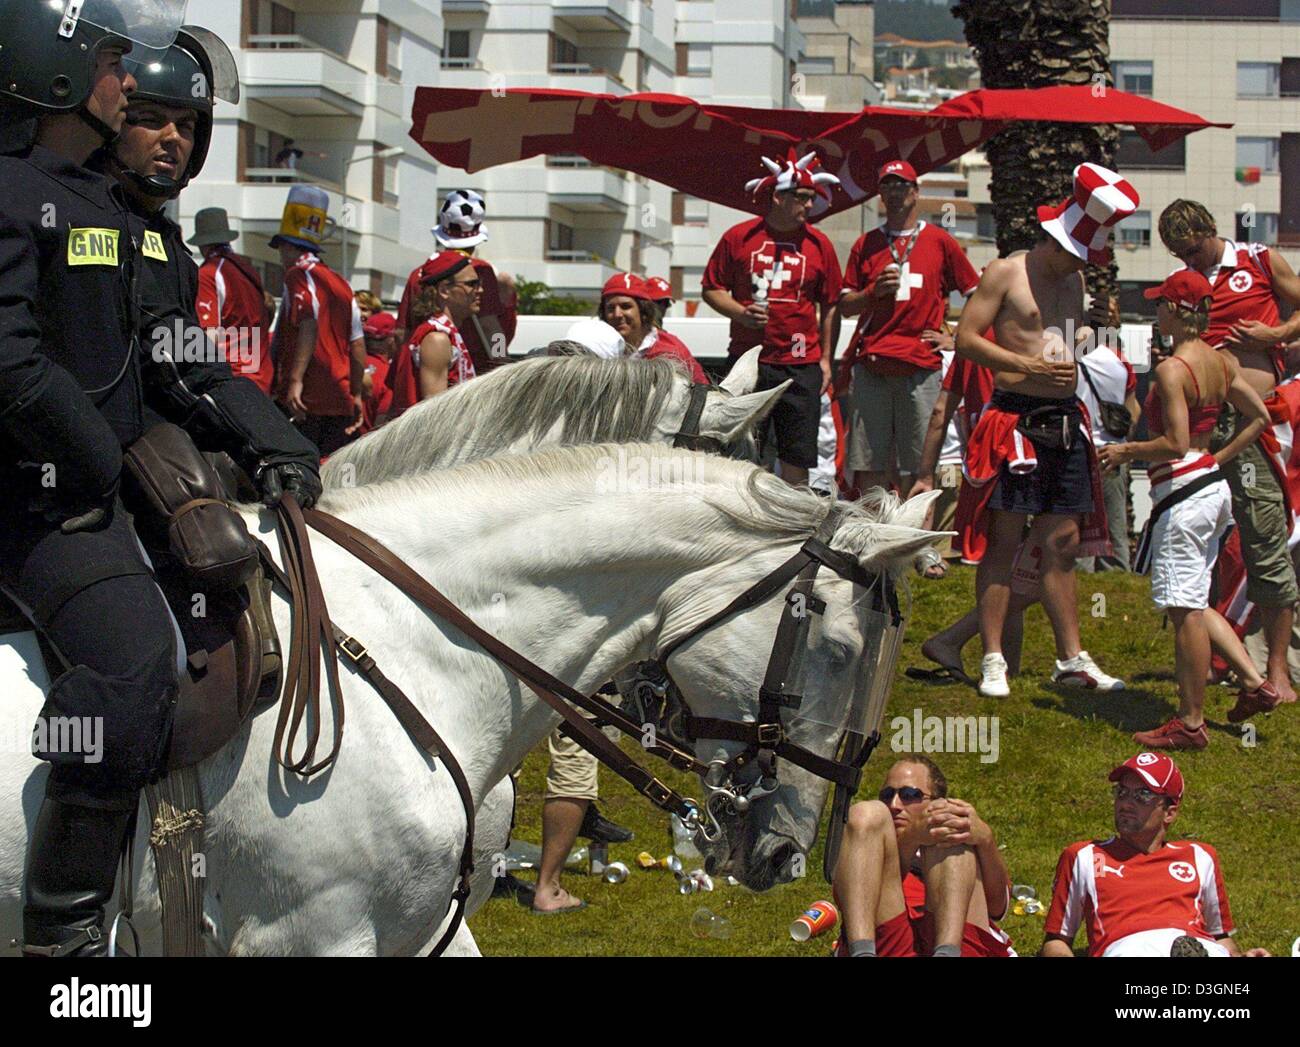 (Afp) - Des agents de police portugais monté monter sur leurs chevaux passé un groupe de fans de football suisse avant le début de l'Euro de football 2004 Jeu de groupe s'opposant à l'Angleterre et la Suisse à la cidade Stadium à Coimbra, Portugal, 17 juin 2004. Cependant, à la fin de la Suisse a perdu 0-3.  + + +PAS D'APPLICATIONS DE TÉLÉPHONIE MOBILE + + + Banque D'Images